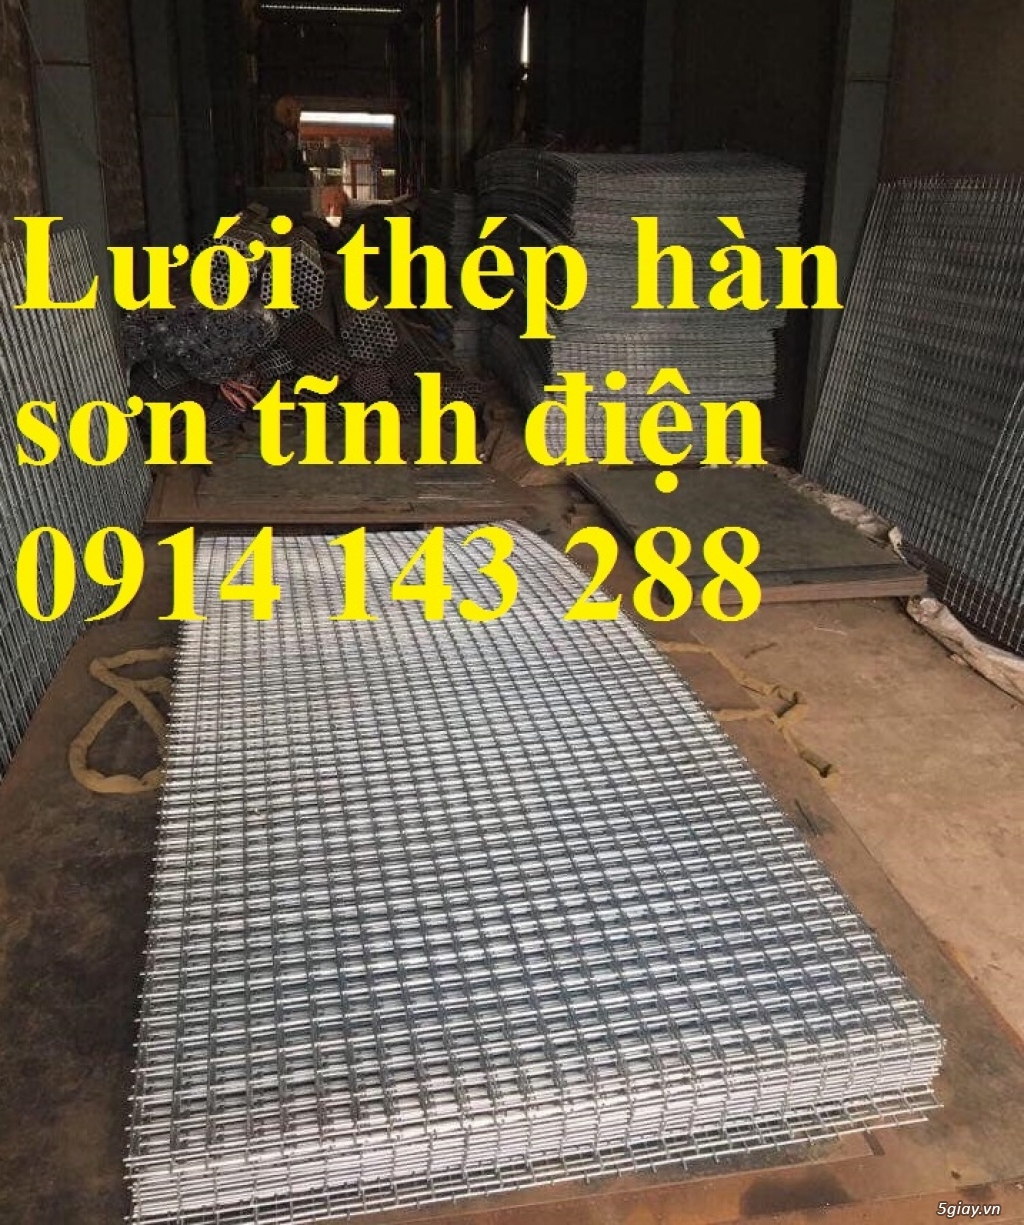 Nhà sản xuất lưới thép hàn A10 (D10a200x200) giá rẻ - 096 717 3304 - 4